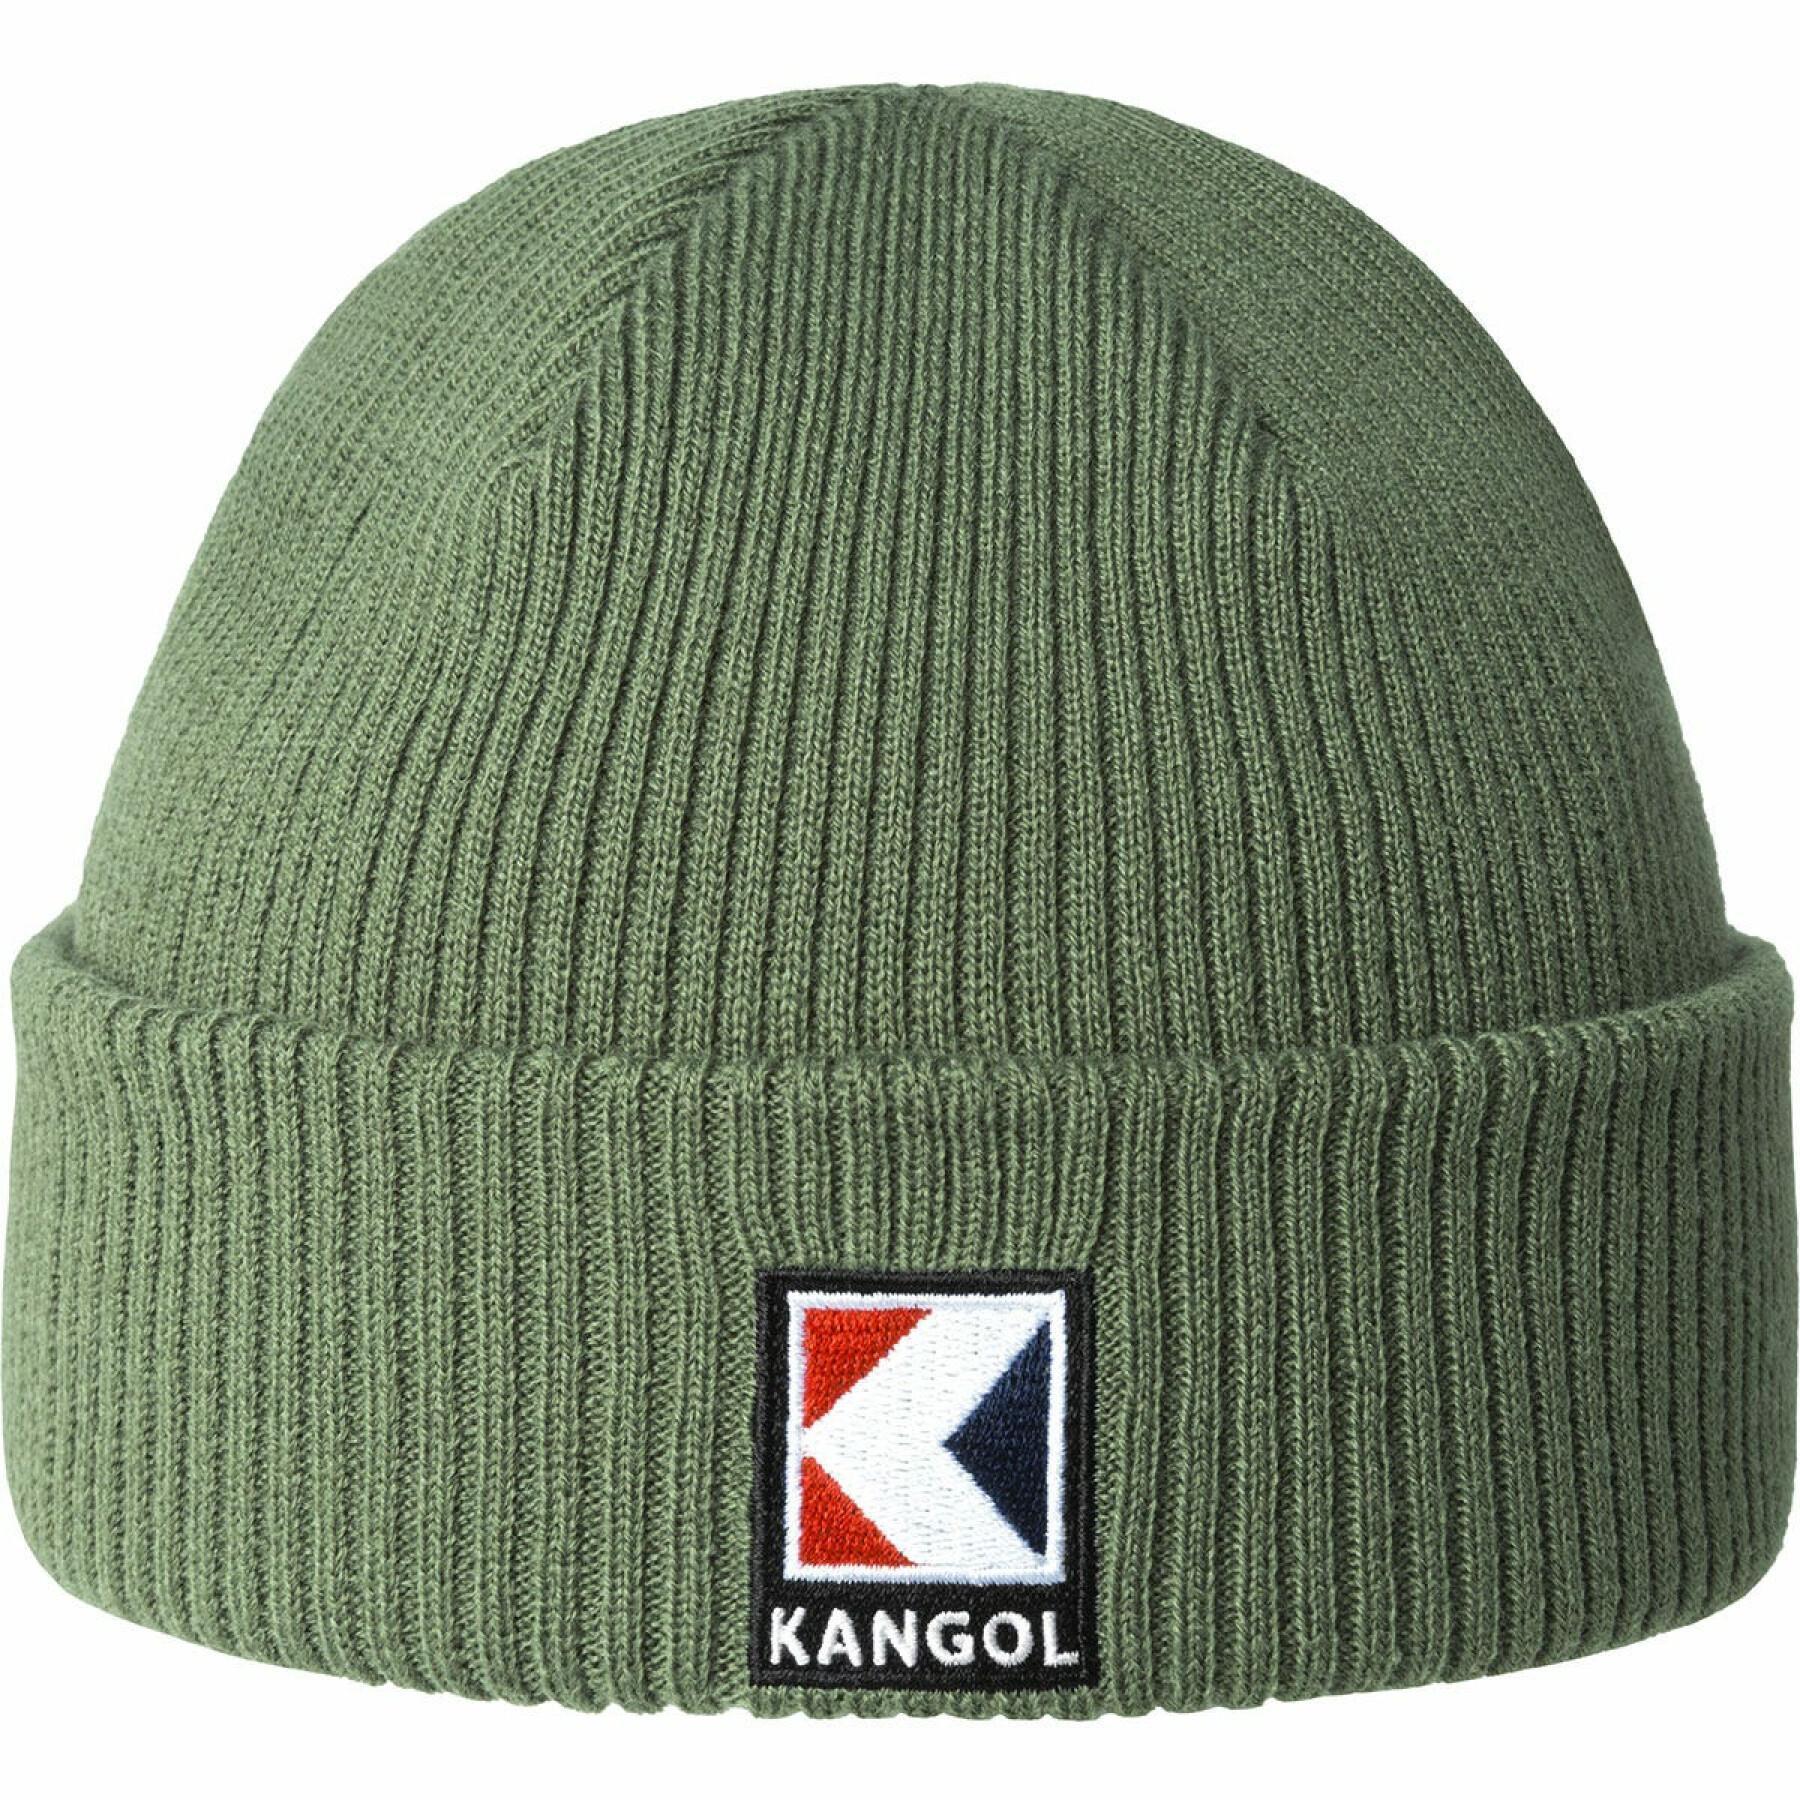 Bonnet Kangol Service K